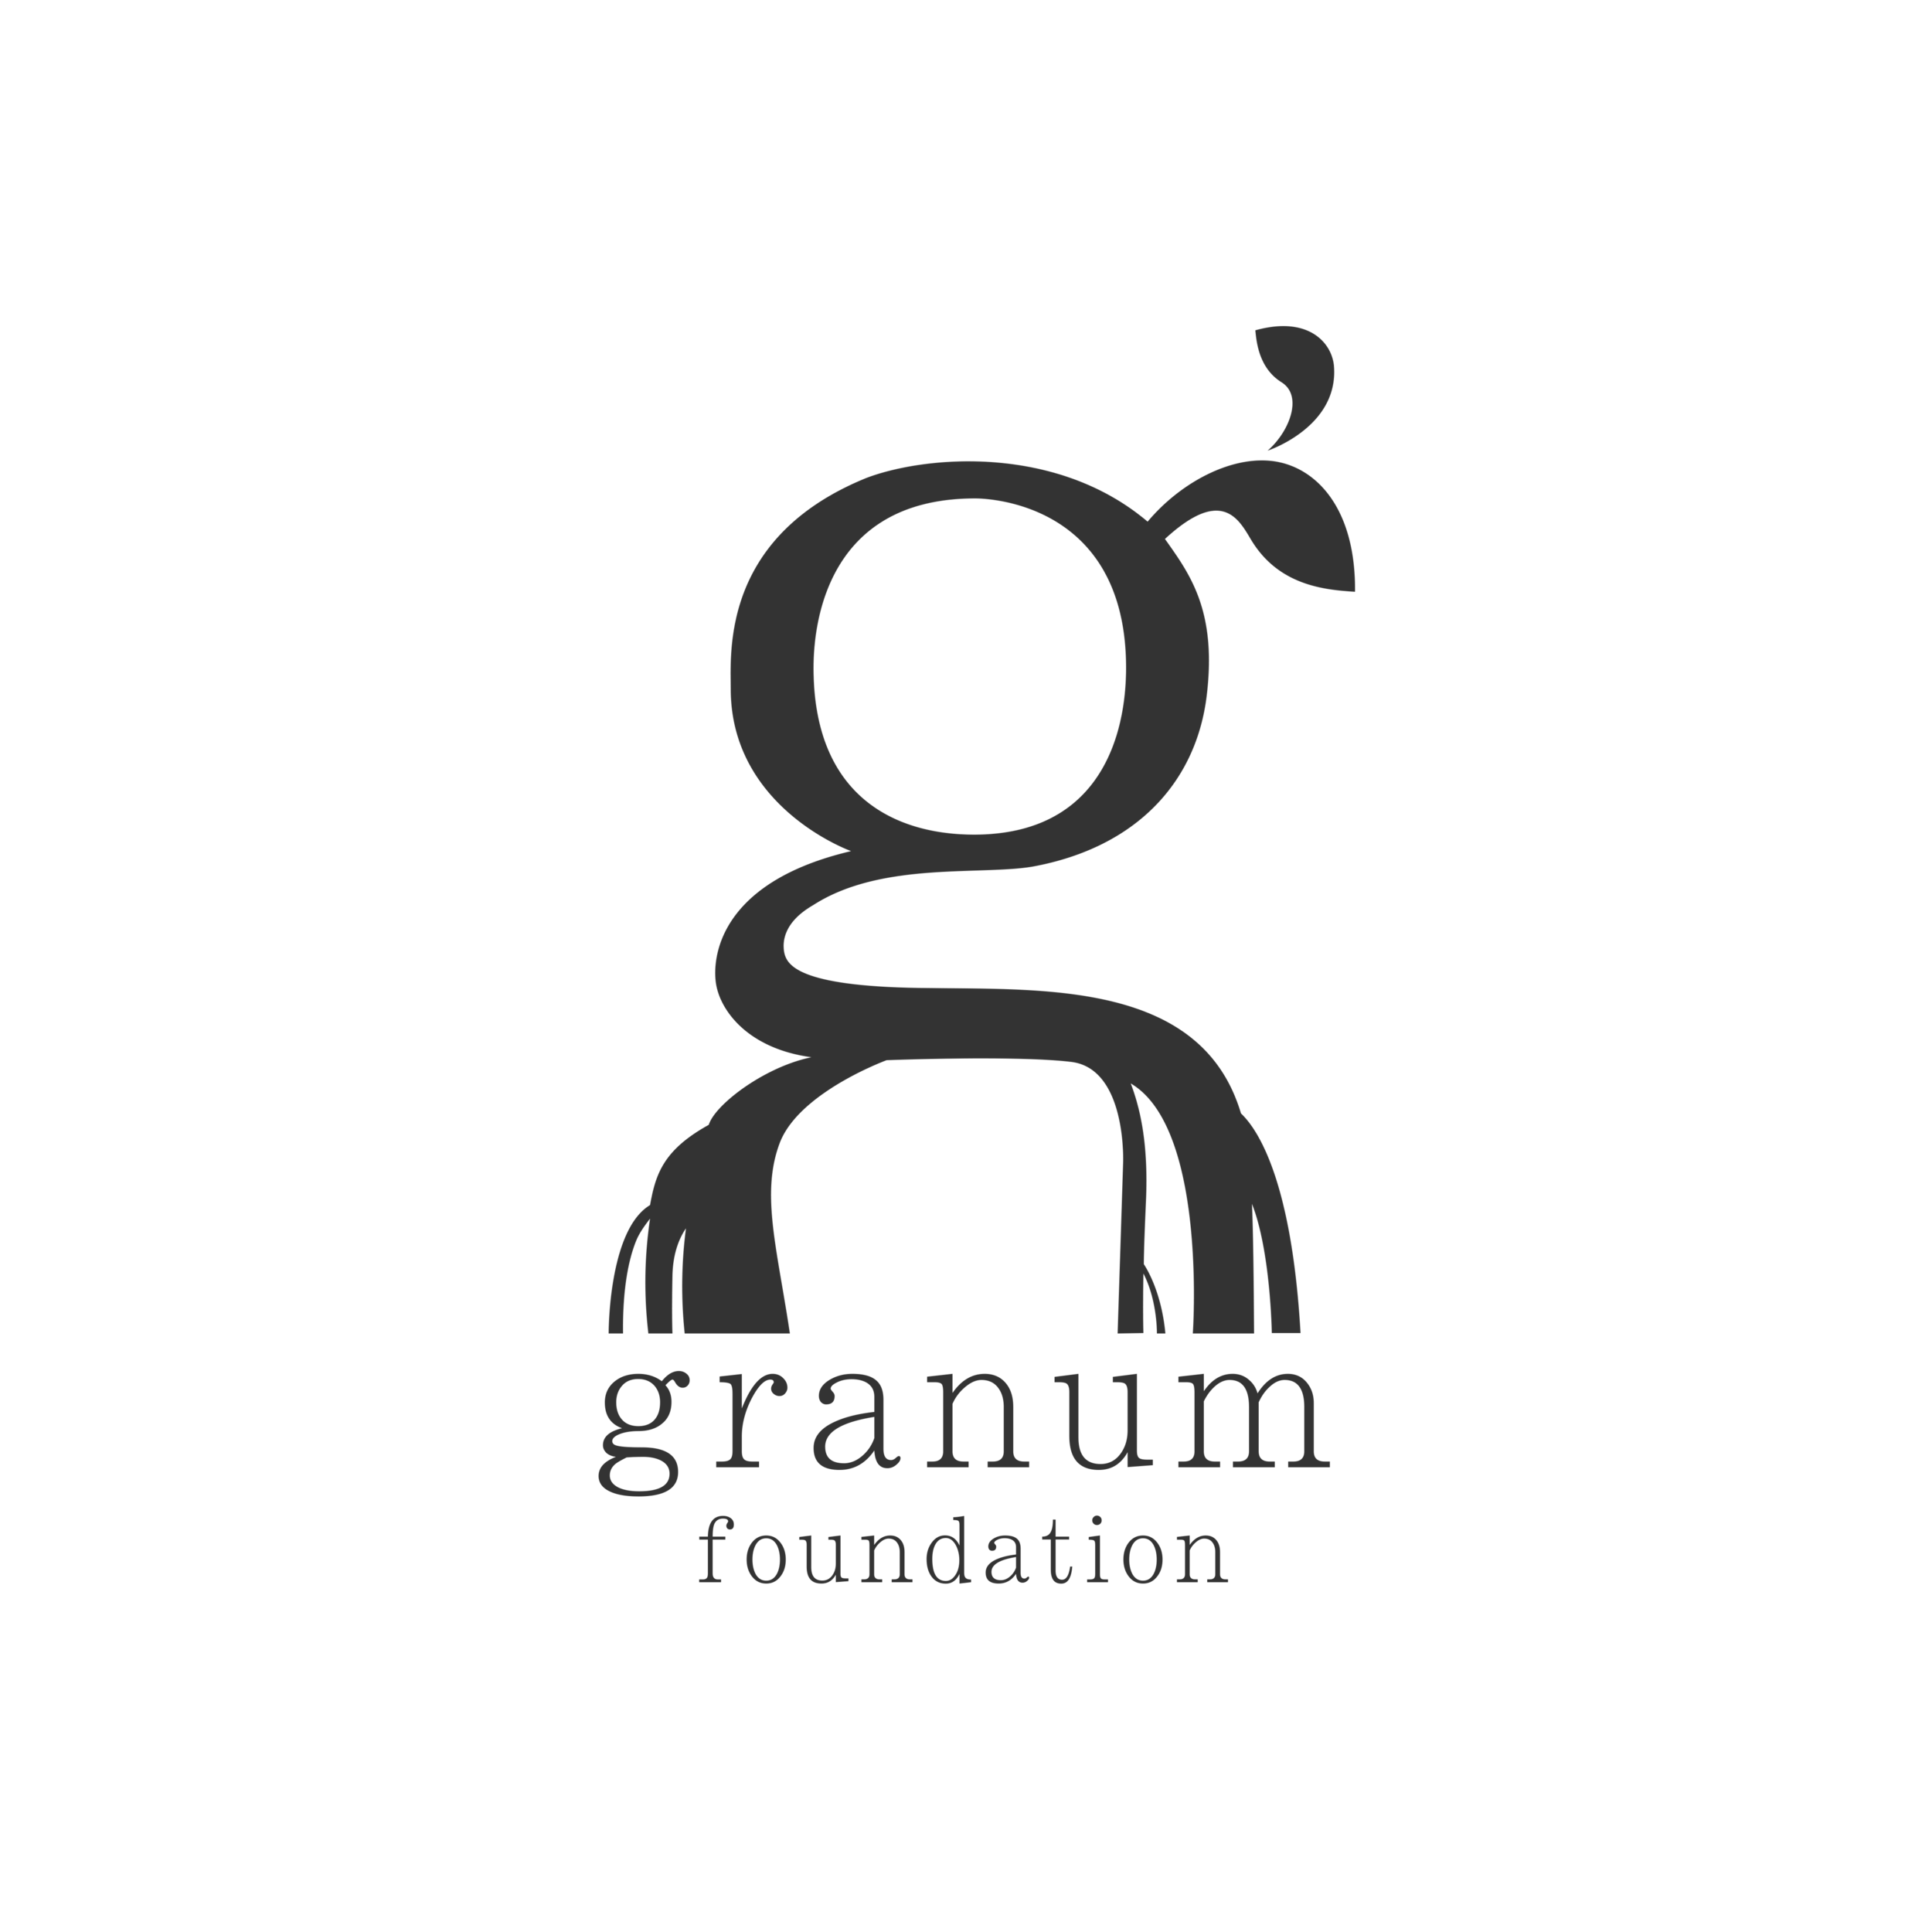 Granum Foundation